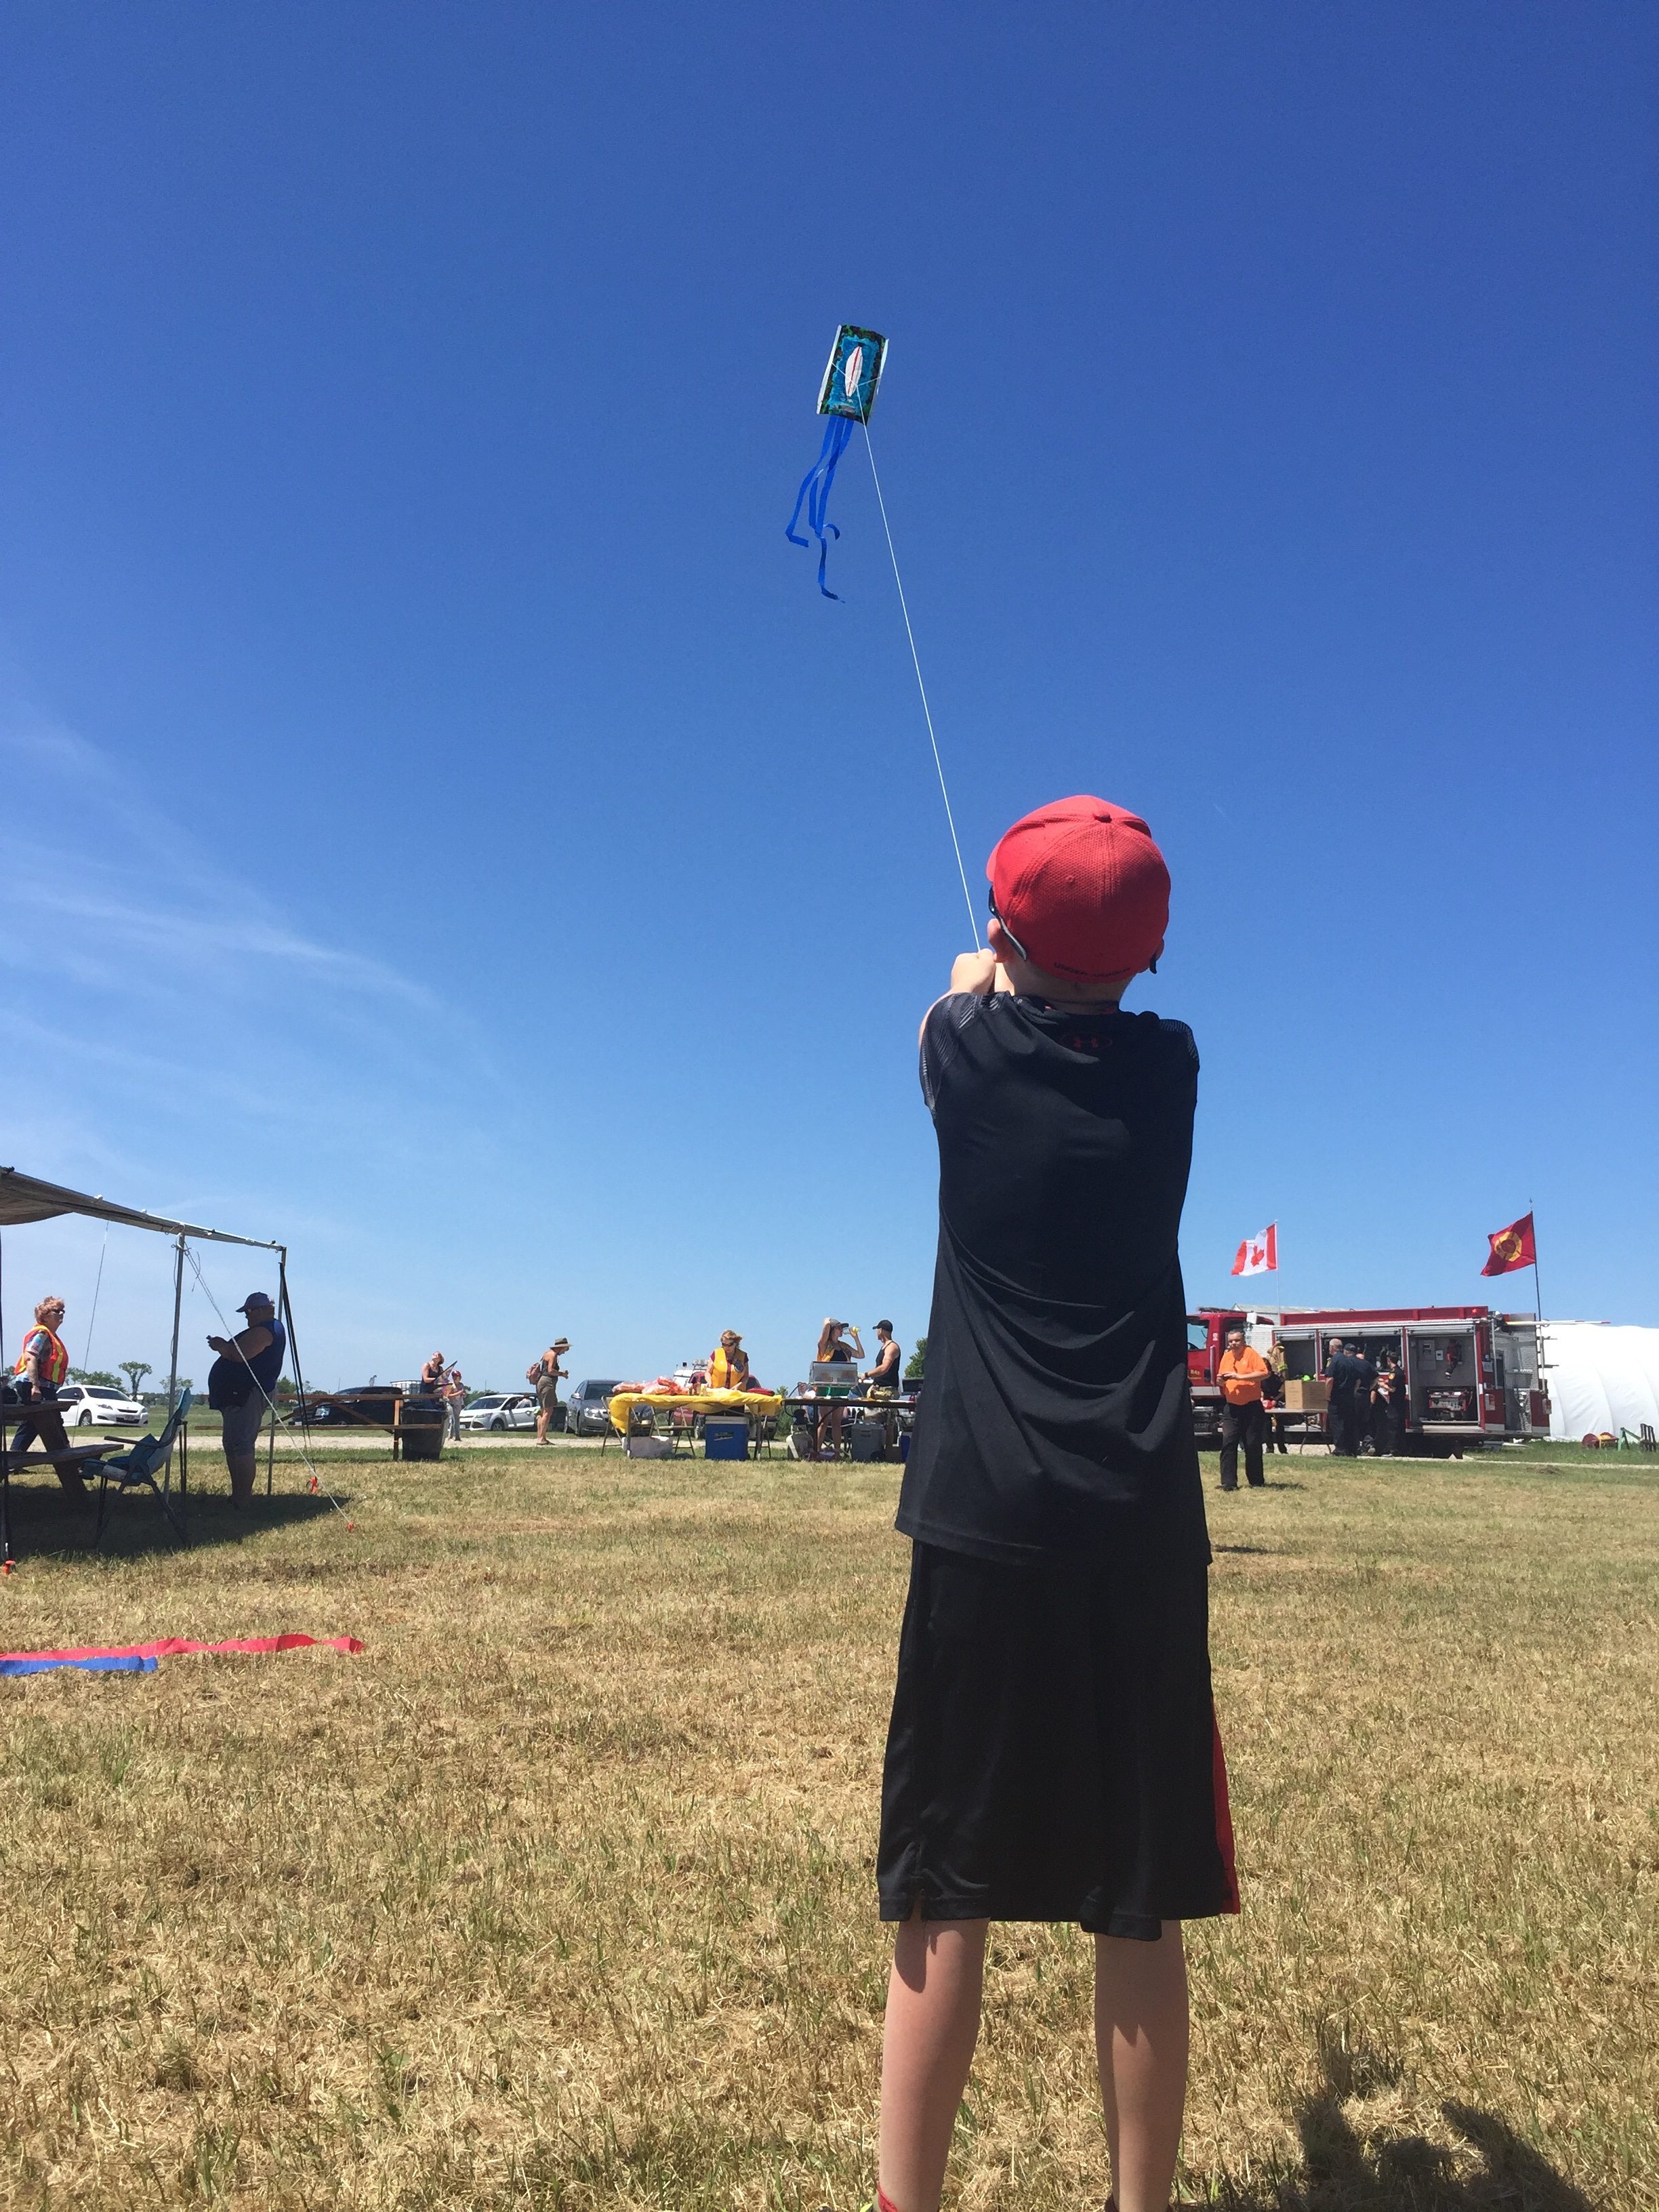 2nd Annual Kite Festival